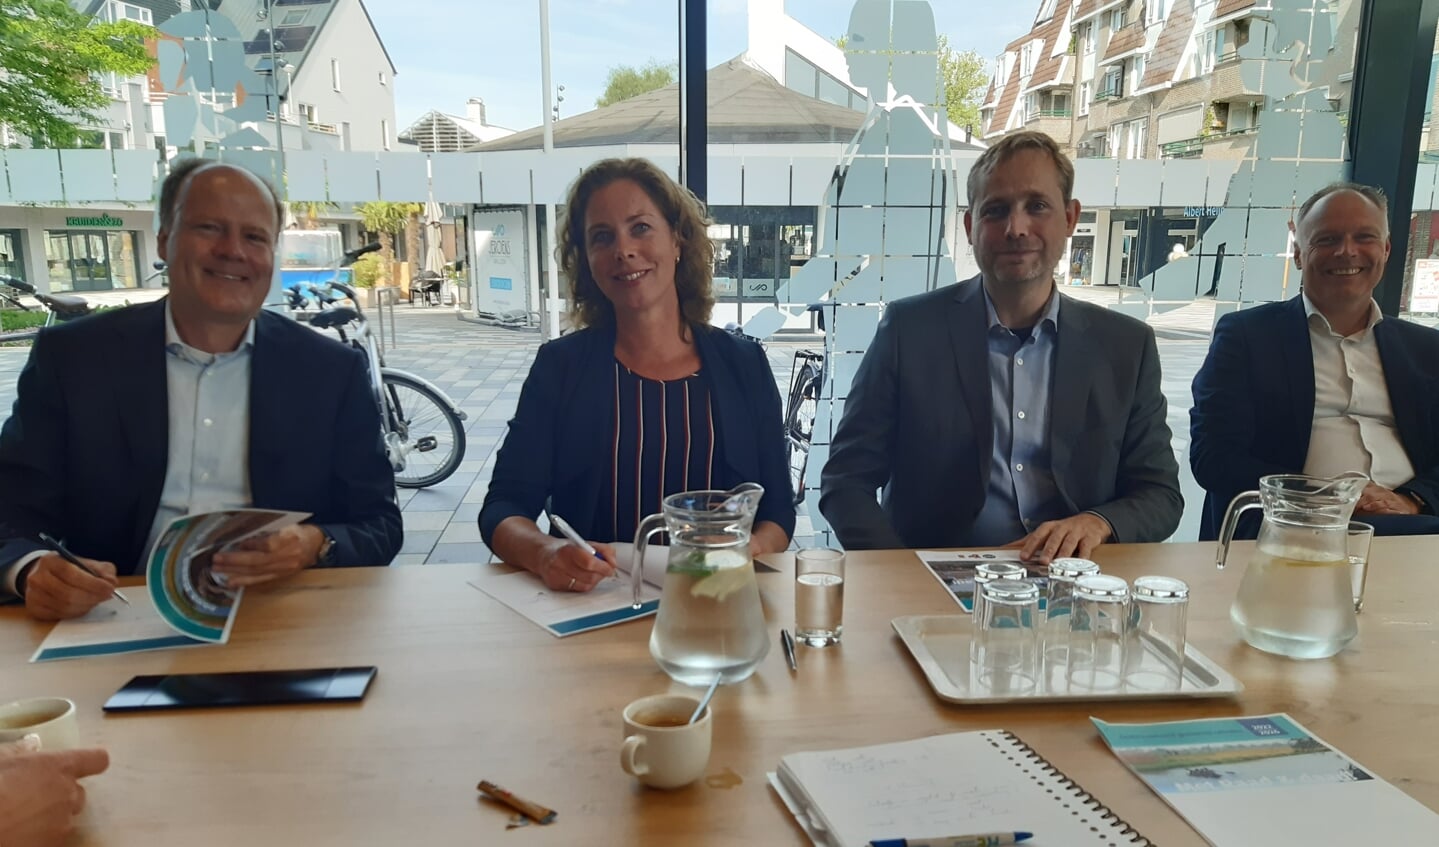 Carlos Genders (VVD), Alexandra Kolkman (Lokaal Belangrijk) en Bas van Os (CDA) zetten hun handtekening onder het coalitie-akkoord. Beoogd wethouder Patrick Kiel kijkt breed lachend toe.